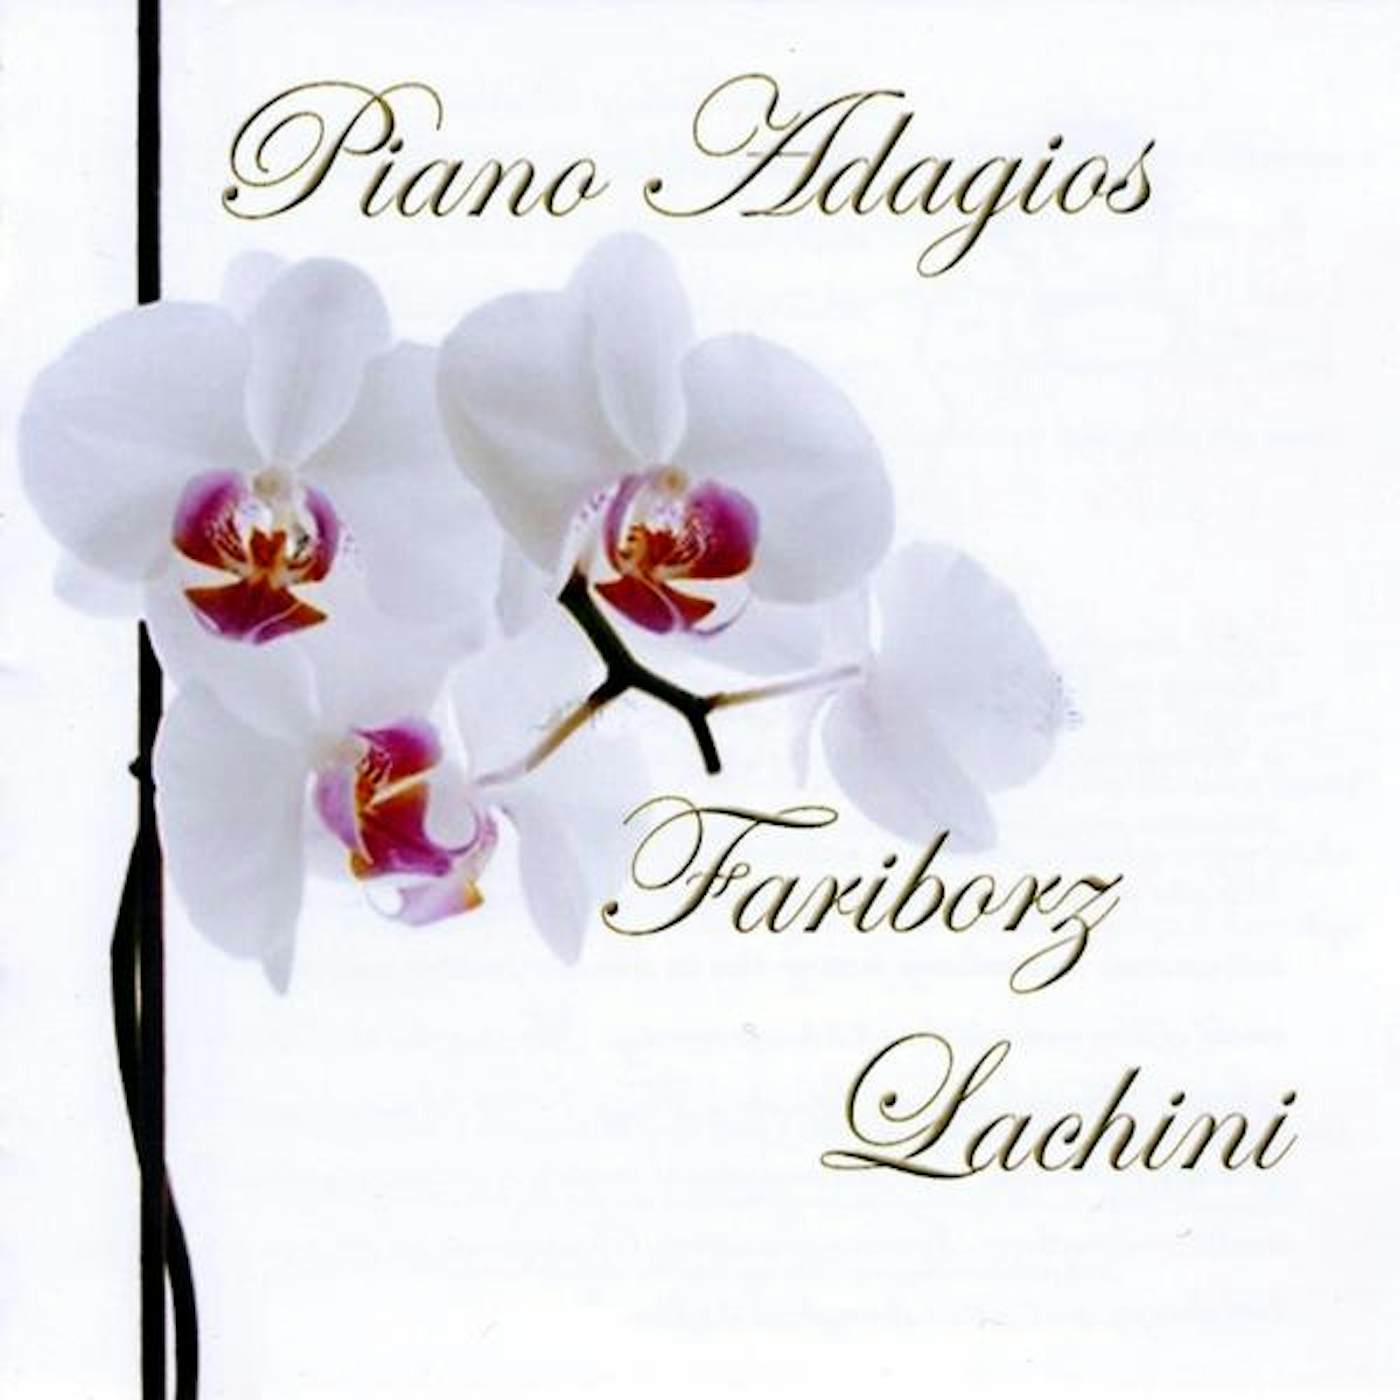 Fariborz Lachini PIANO ADAGIOS CD